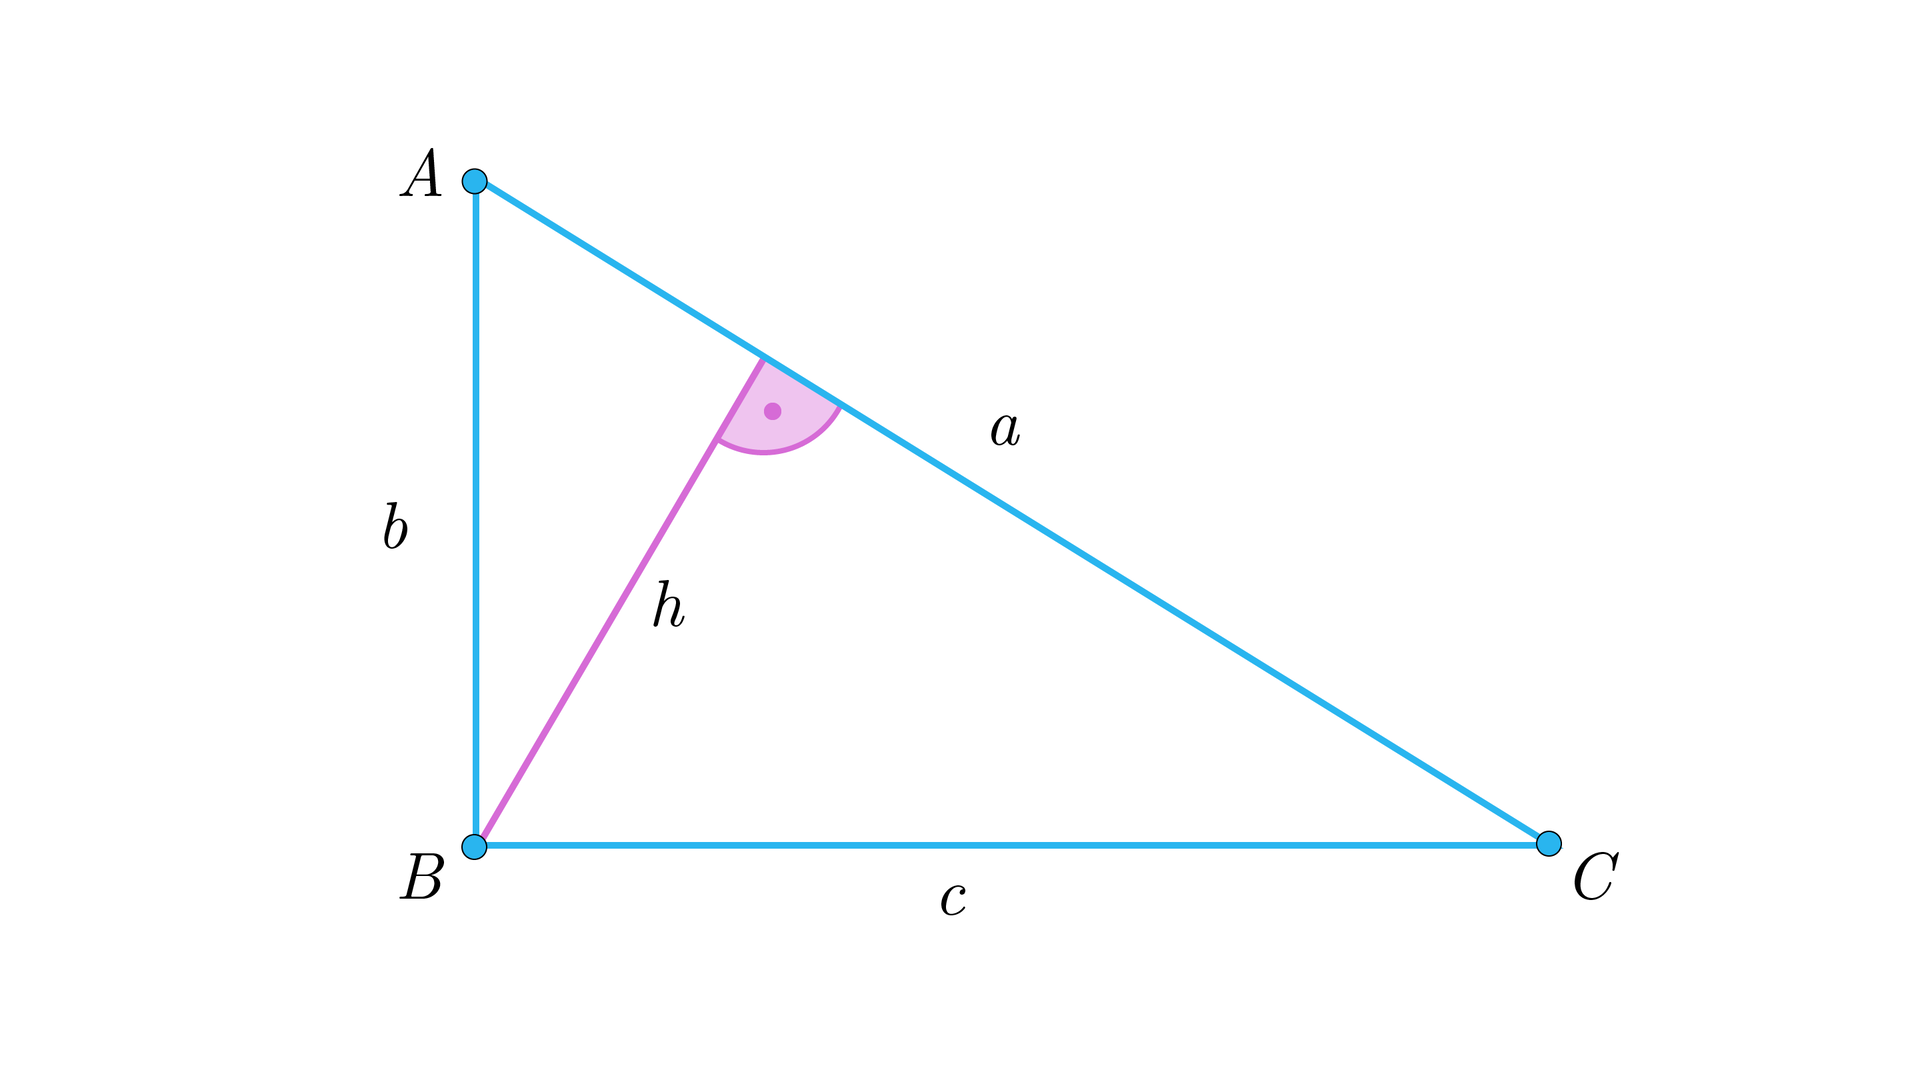 Rysunek przedstawia trójkąt prostokątny o podstawie c, która jest jednocześnie bokiem BC, o pionowej przyprostokątnej b, która jest bokiem AB oraz o przeciwprostokątnej a, która jest bokiemCA. Z wierzchołka przy kącie prostym, czyli wierzchołka B poprowadzono do przeciwprostokątnej wysokość h i oznaczono między nimi kąt prosty.